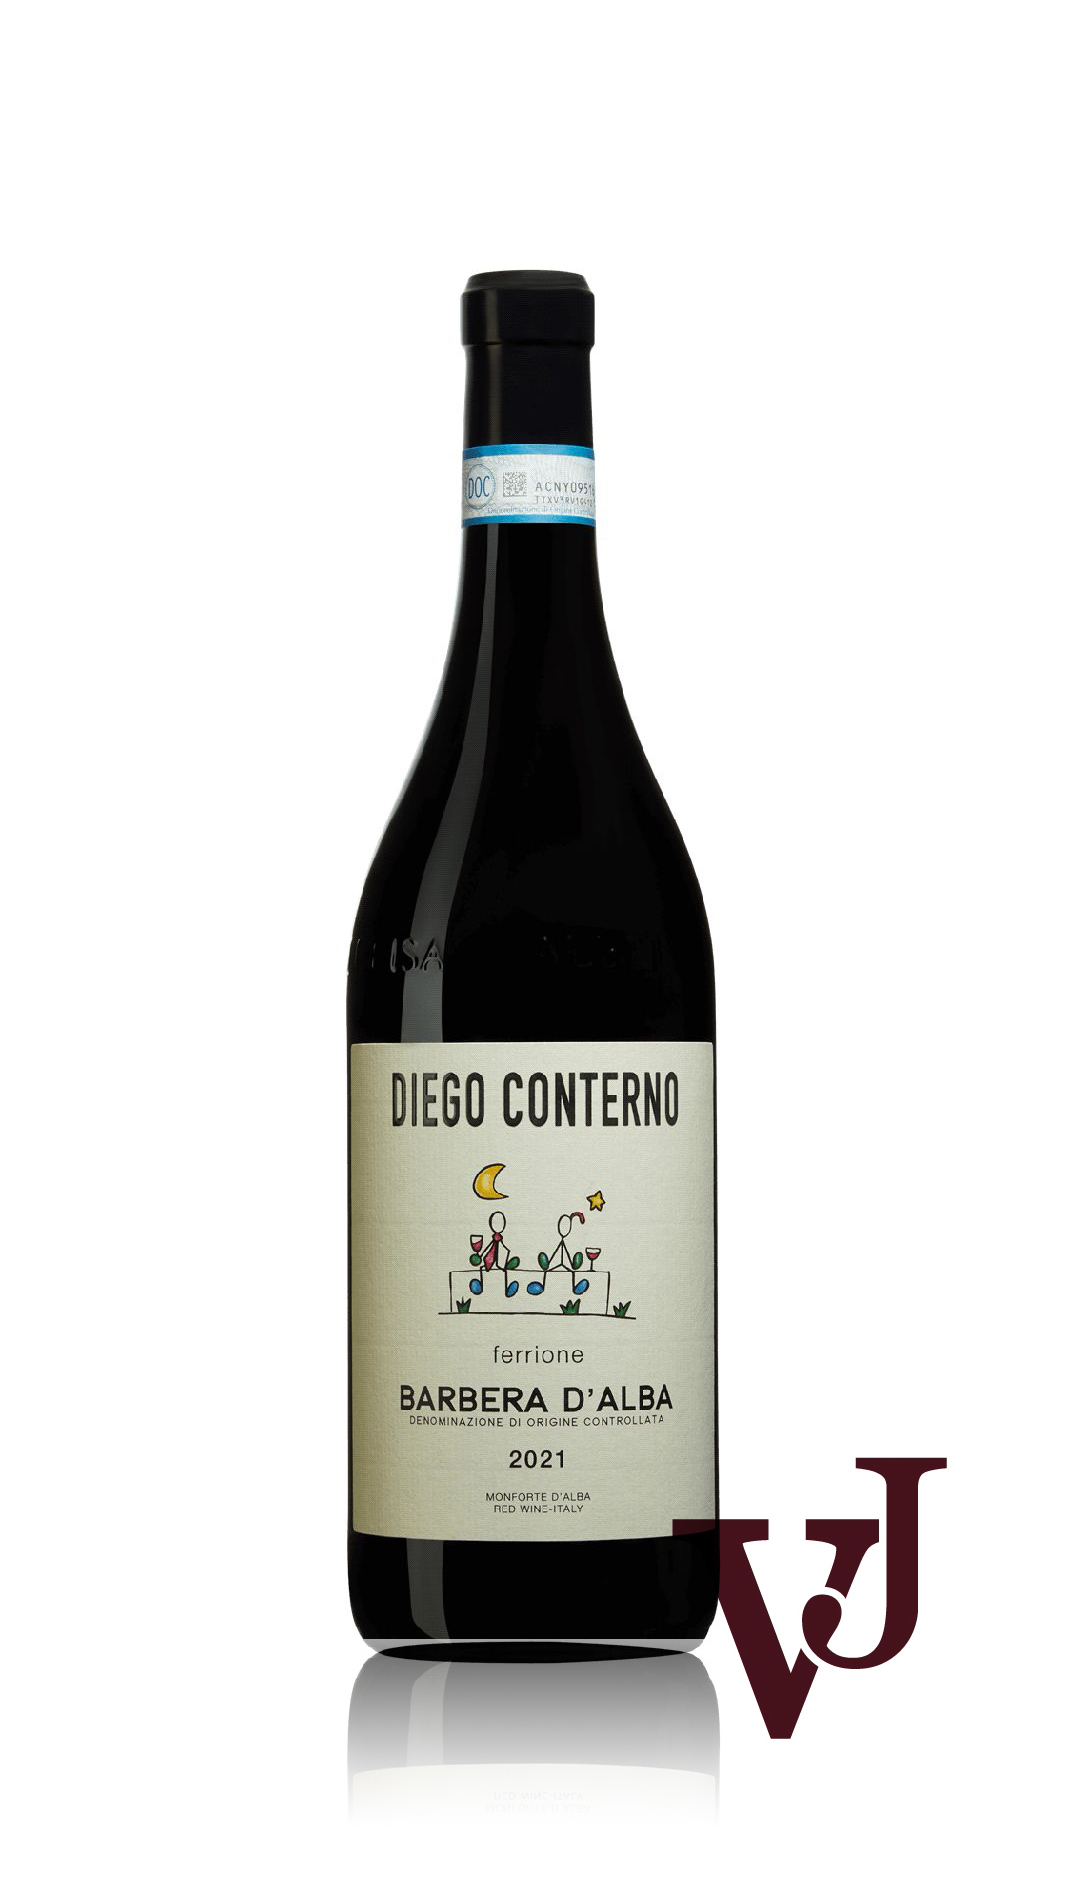 Rött vin - Barbera d'Alba Ferrione Diego Conterno 2021 artikel nummer 9284401 från producenten Diego Conterno från Italien